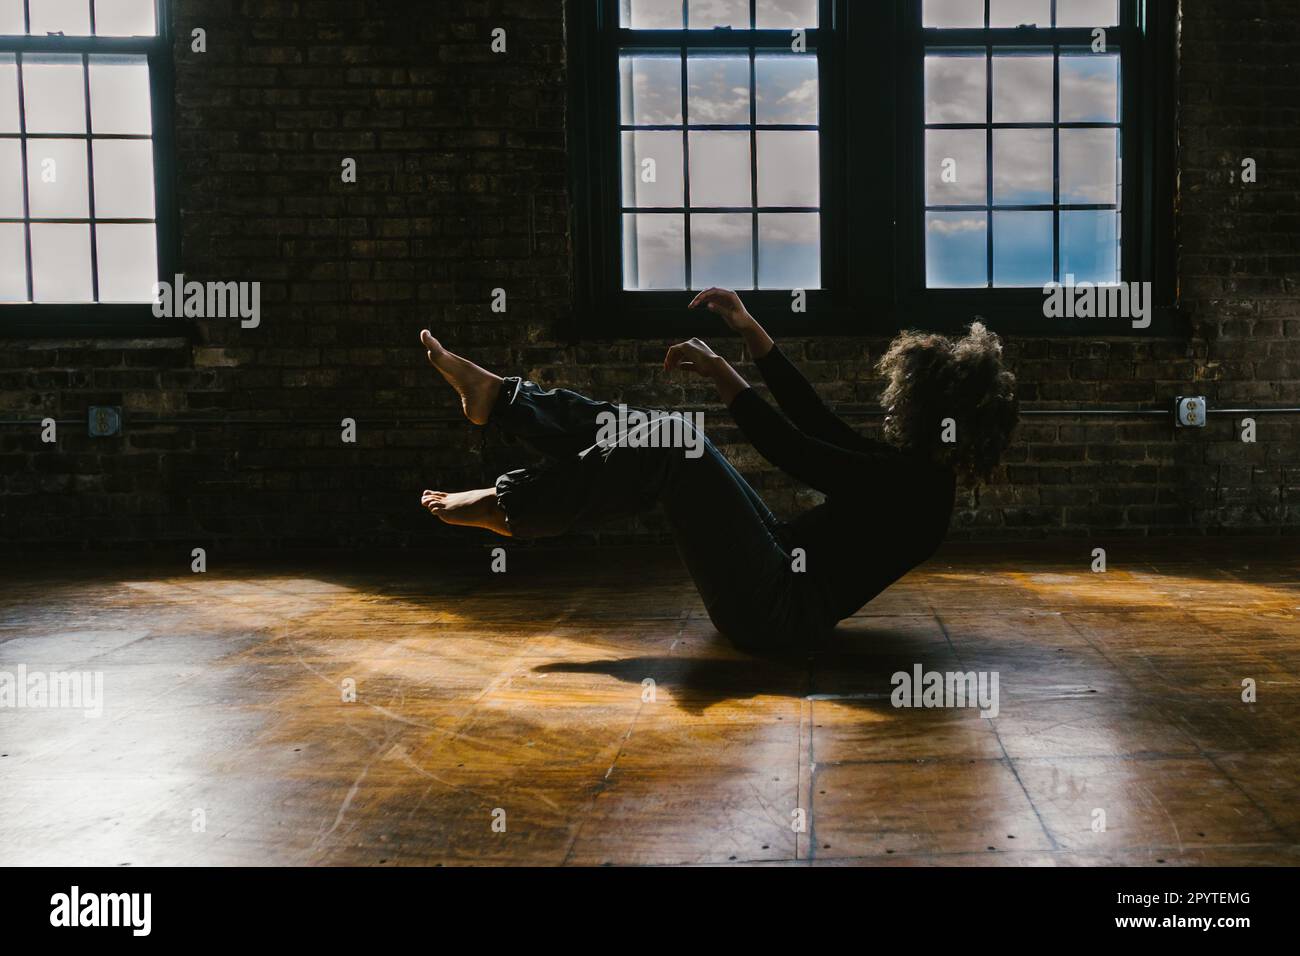 Danseuse noire aux cheveux bouclés dans une posture de danse contemporaine Banque D'Images